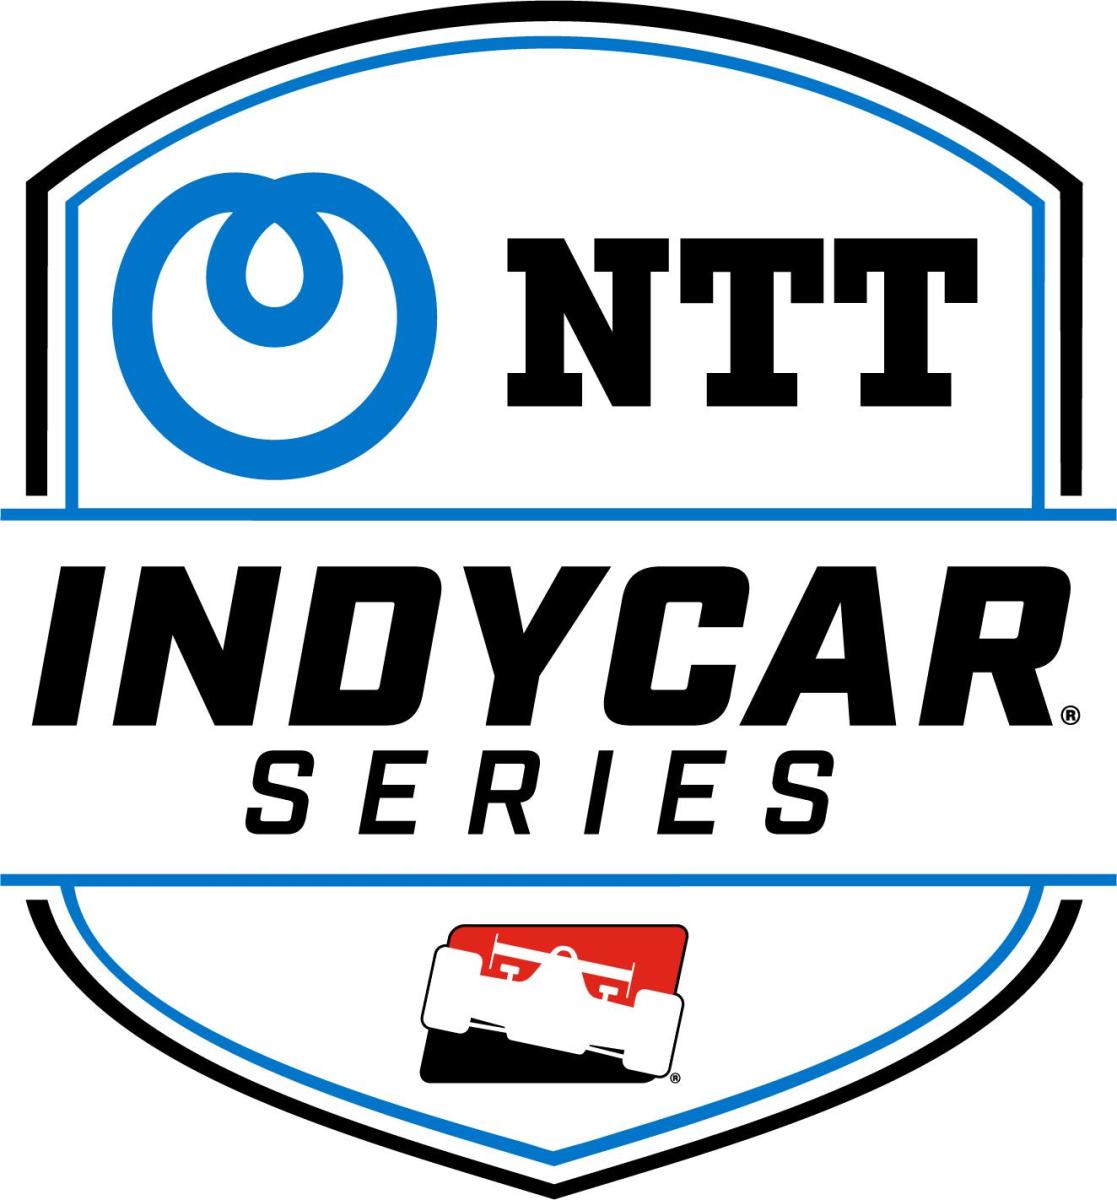 Logo Set_ NTT INDYCAR SERIES Logo_LargeImageWithoutWatermark_m47305 (2)